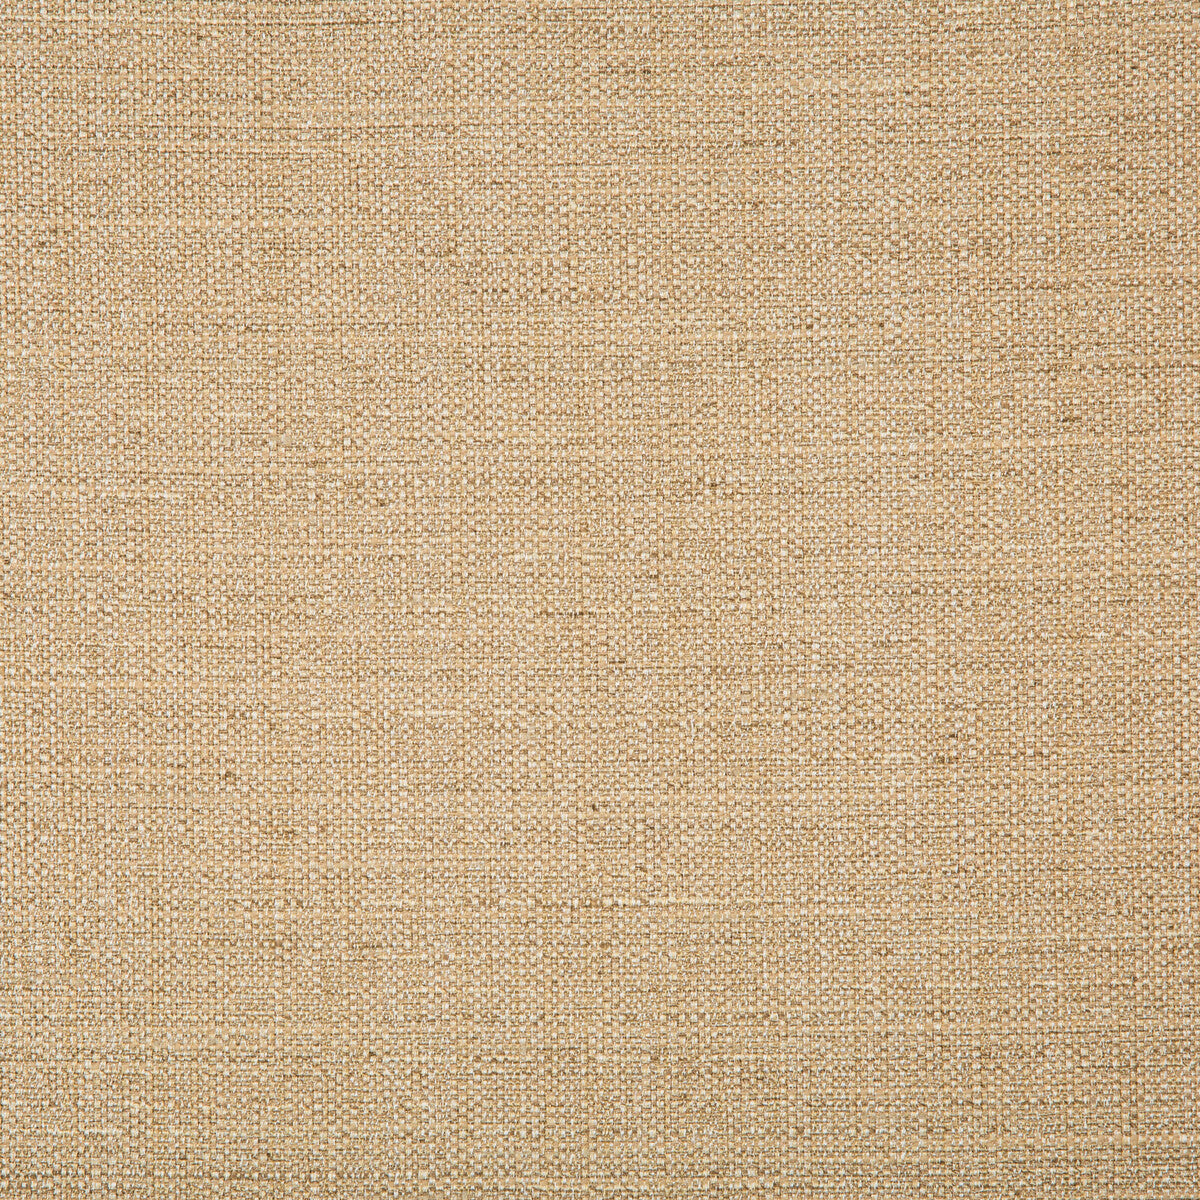 Kravet Basics fabric in 4665-1616 color - pattern 4665.1616.0 - by Kravet Basics